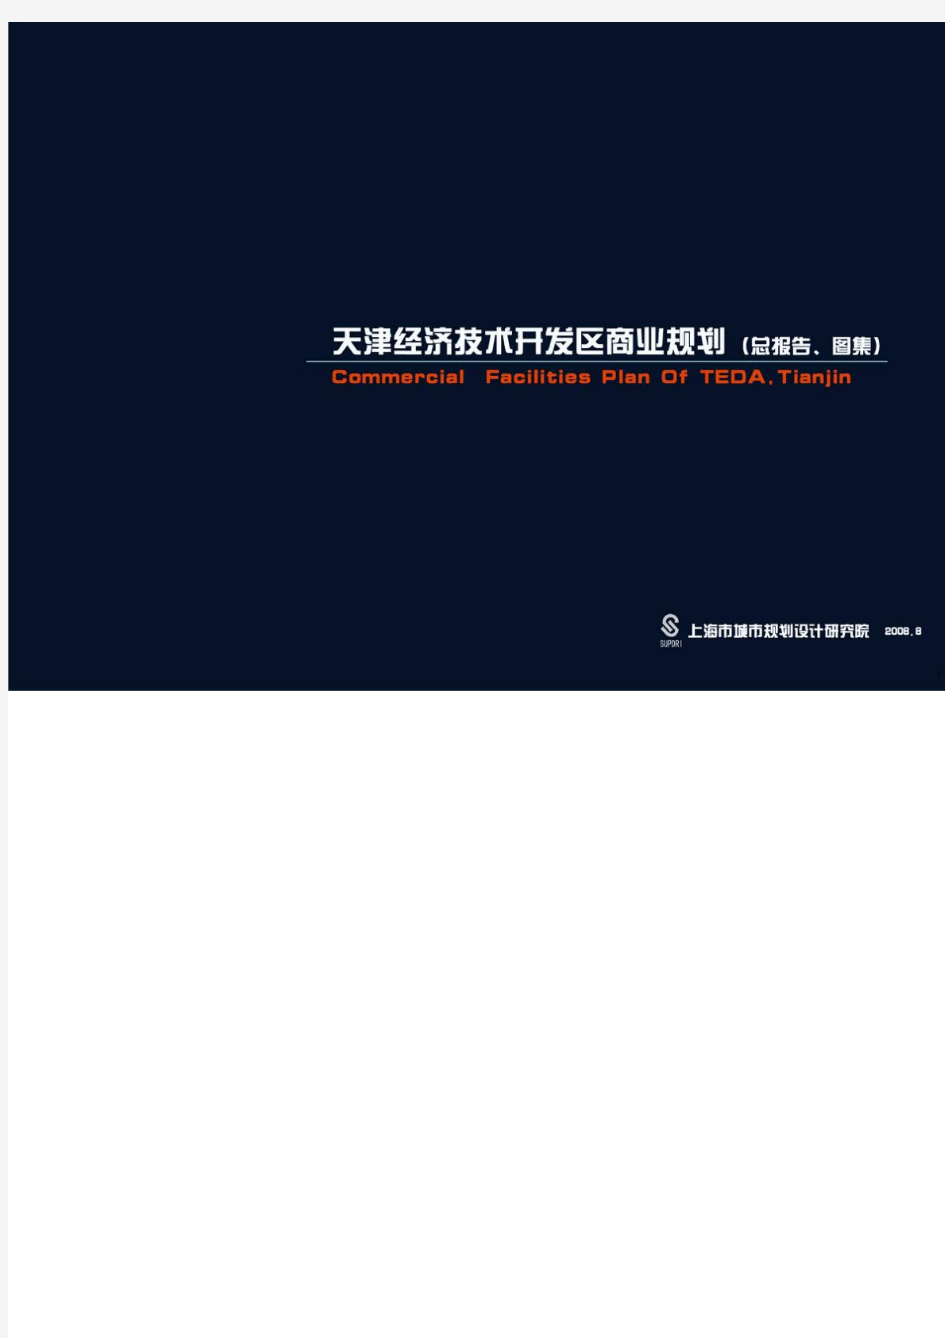 天津经济技术开发区商业规划总报告图集